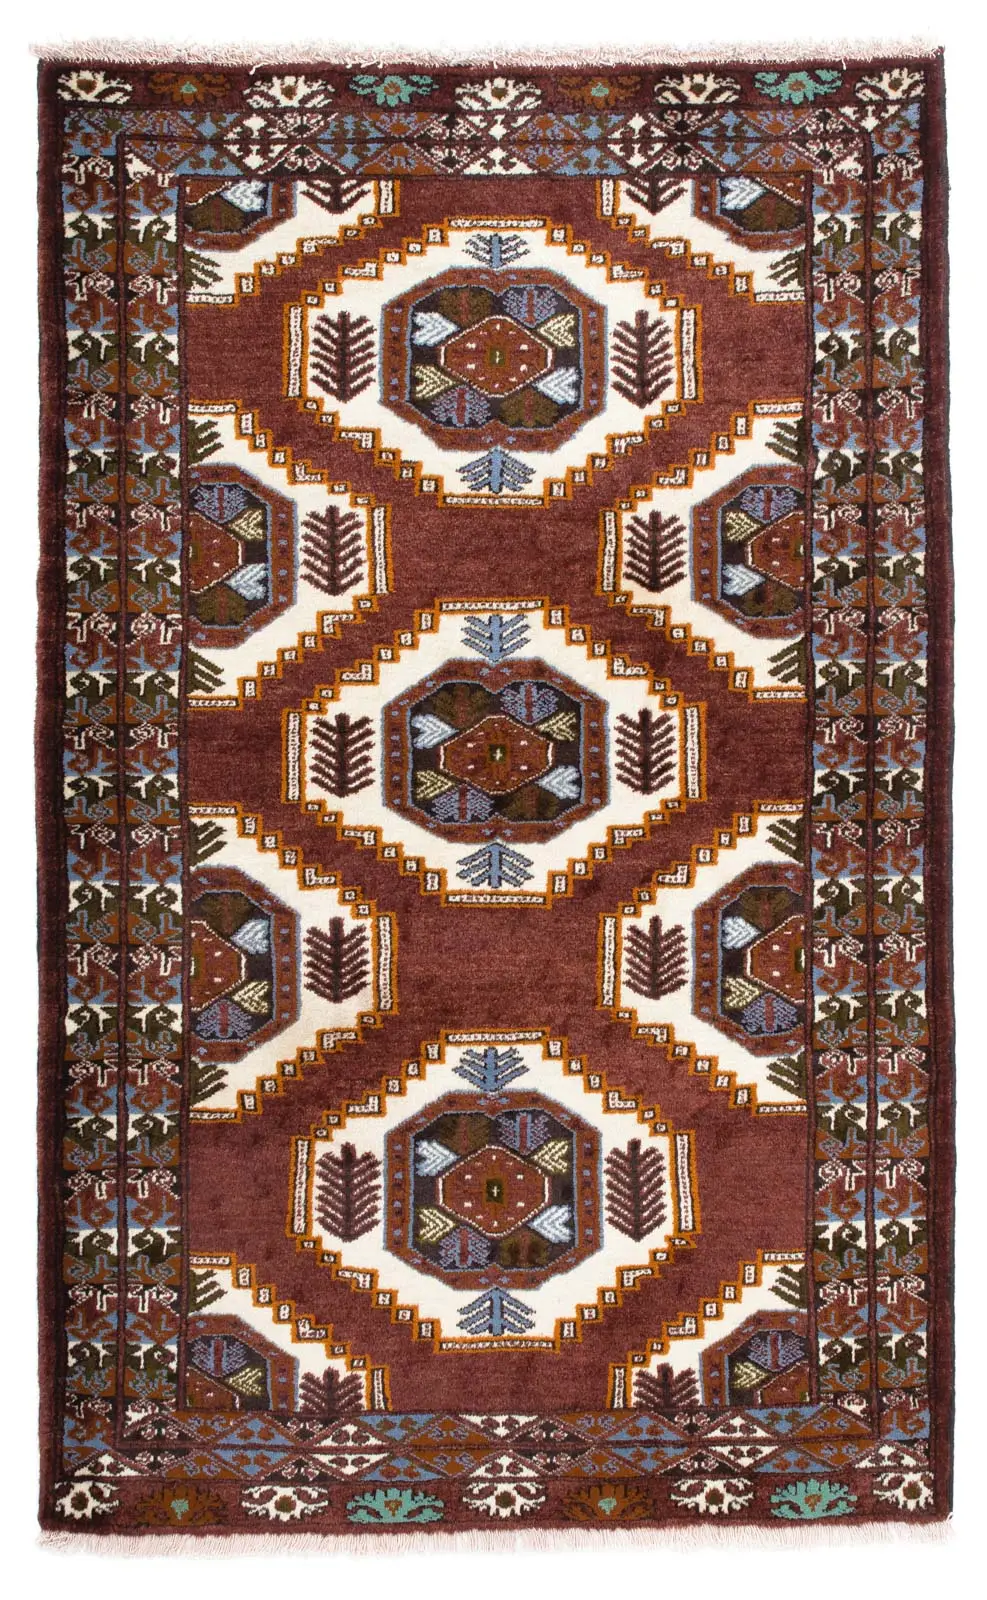 Belutsch Teppich - 160 x 102 cm - braun